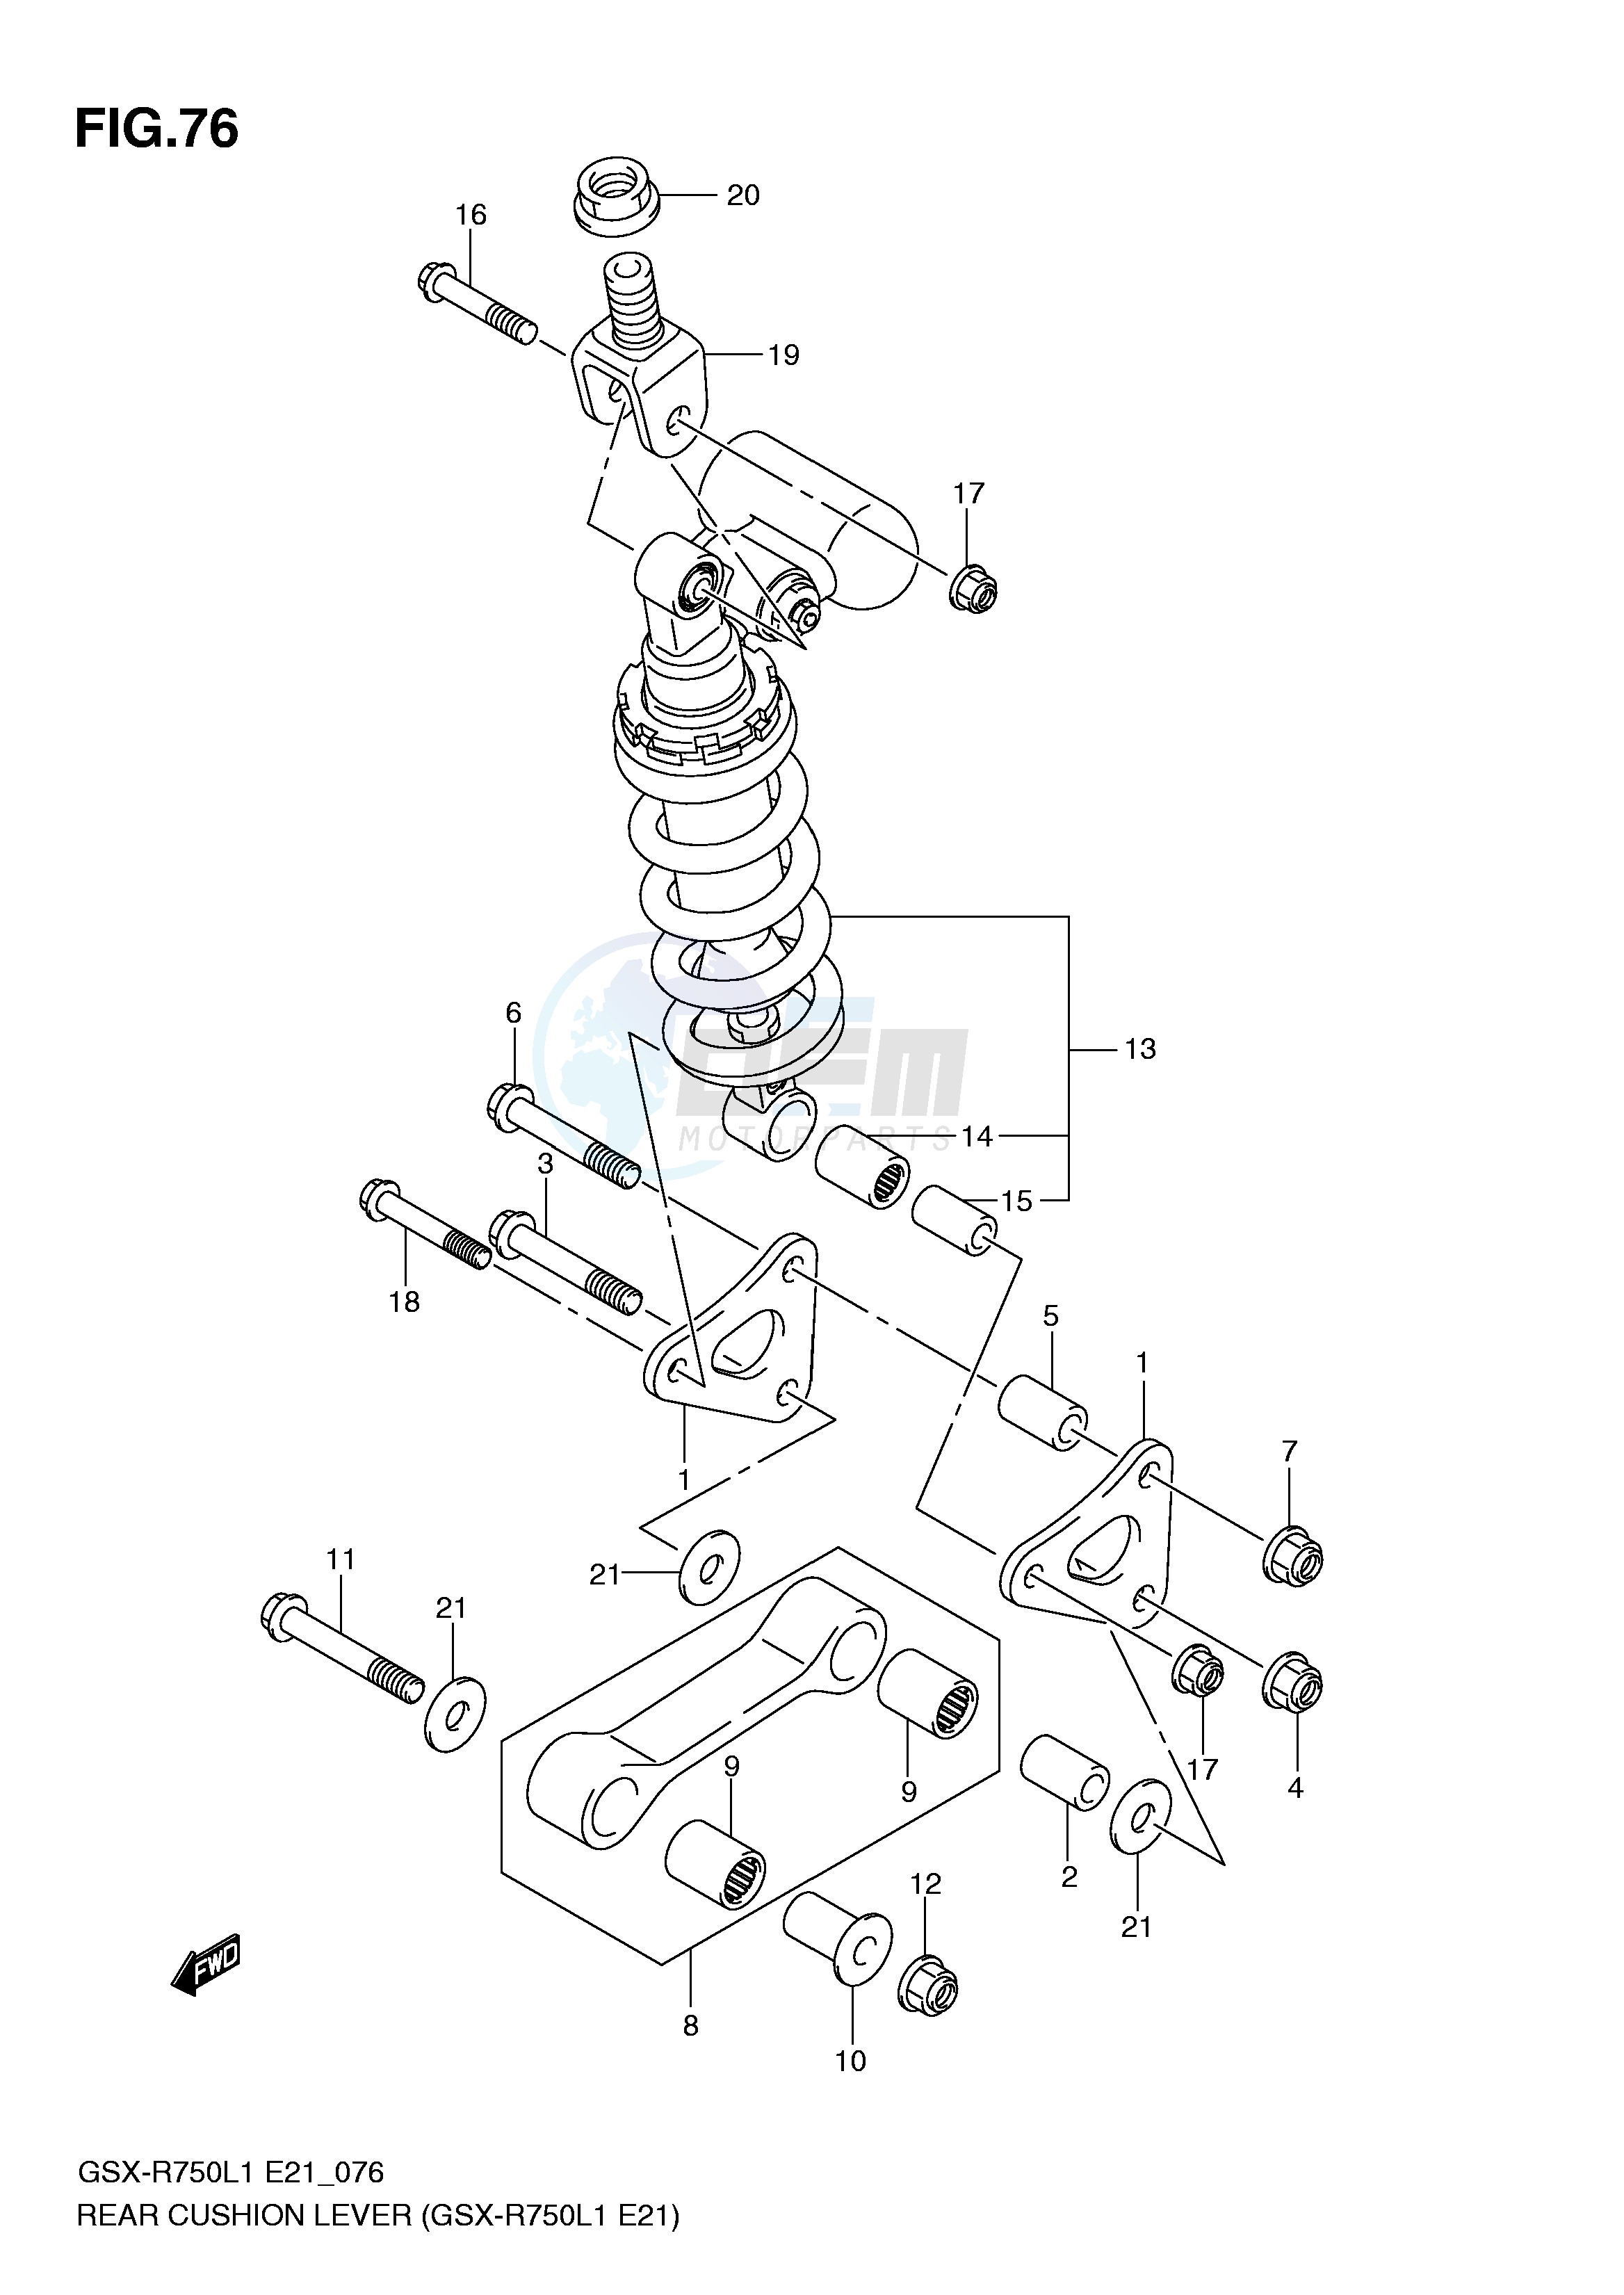 REAR CUSHION LEVER (GSX-R750L1 E21) blueprint